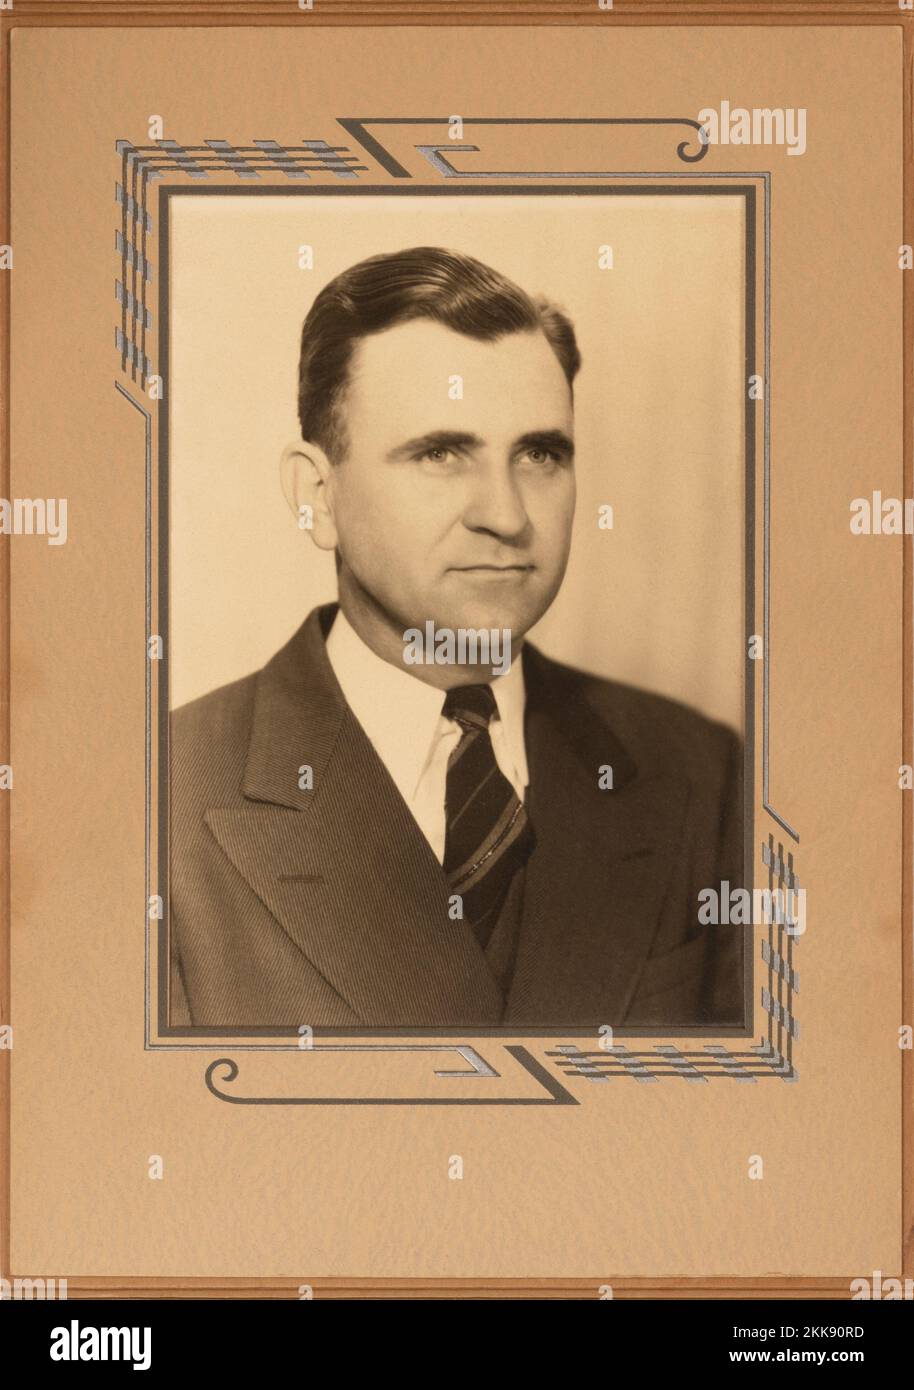 Padre del fotógrafo que murió en 1983. Vintage negro y blanco foto de 1940 de un hombre de negocios de éxito en el marco de la época. Foto de stock